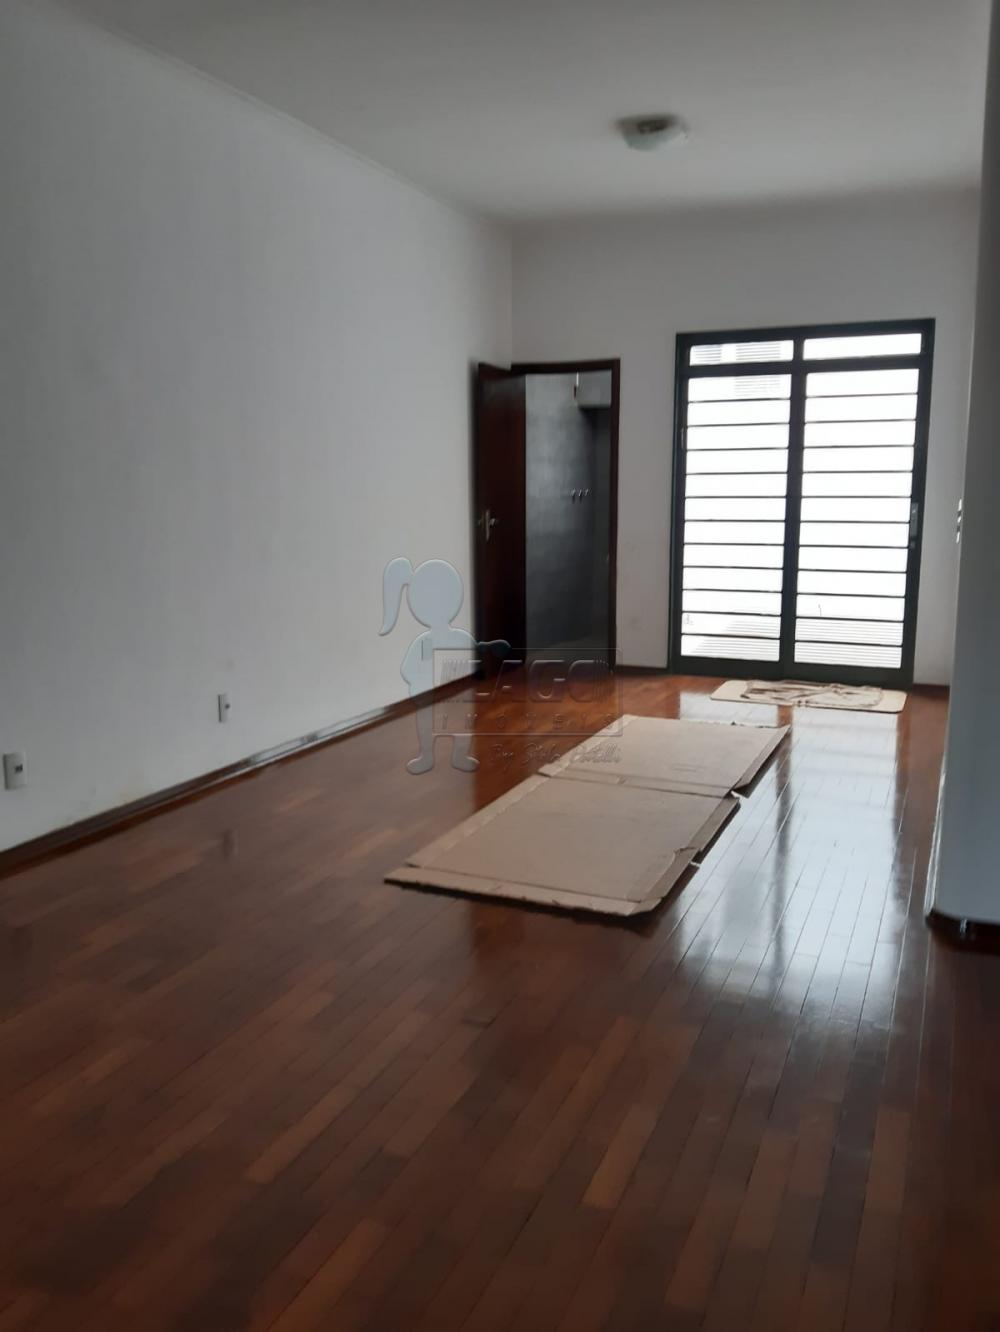 Alugar Casa / Padrão em Ribeirão Preto R$ 3.500,00 - Foto 3